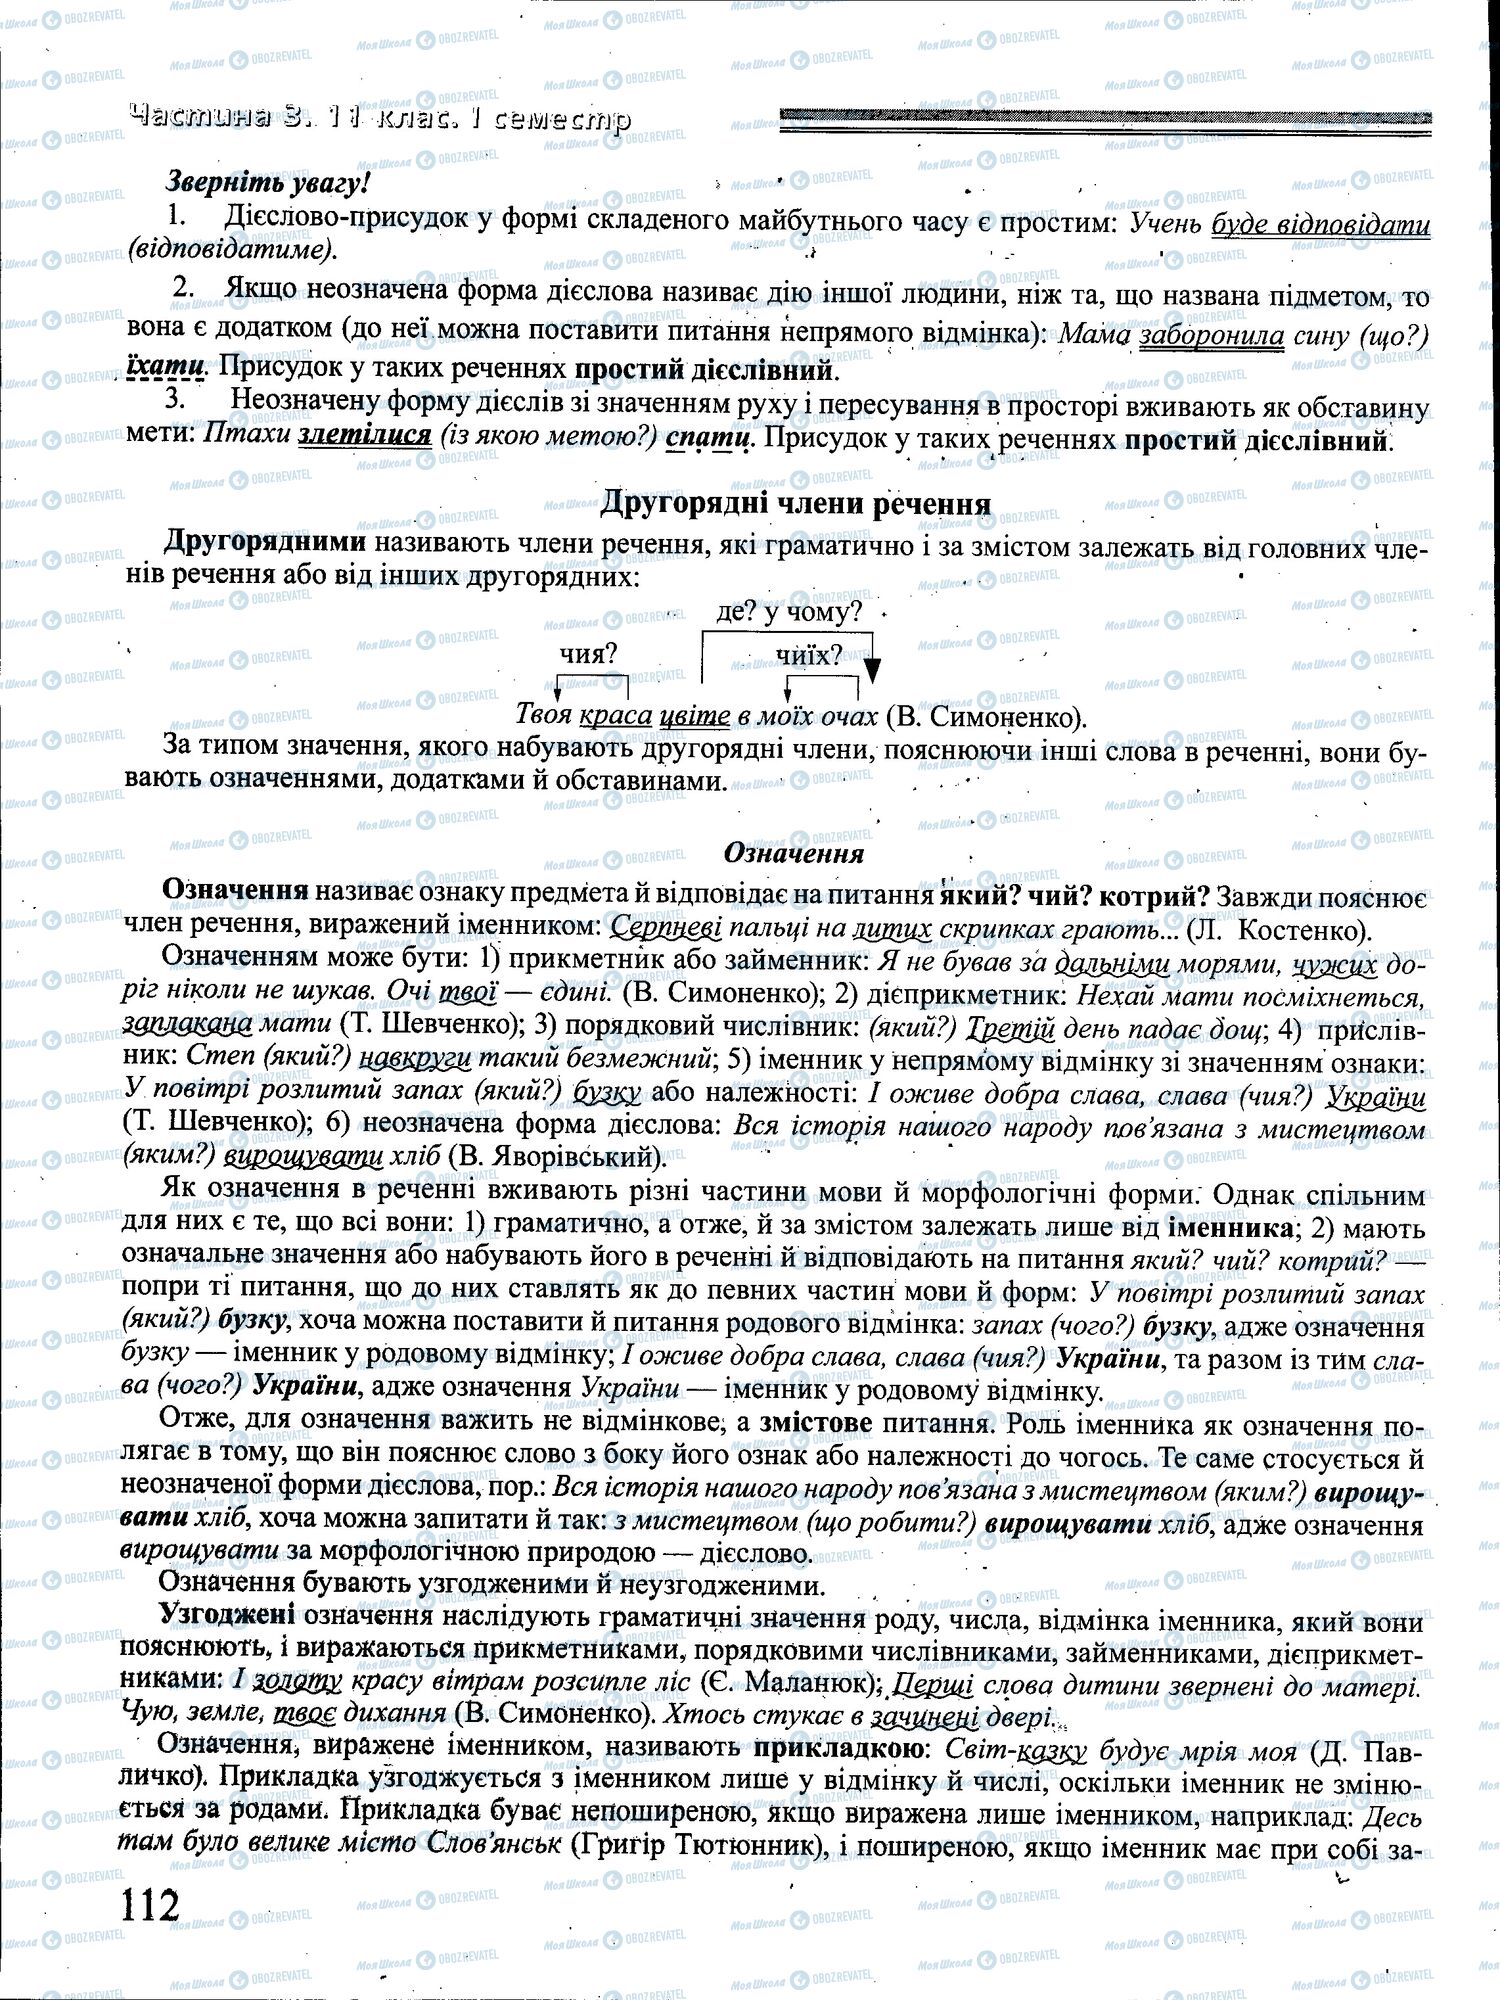 ДПА Укр мова 4 класс страница 112